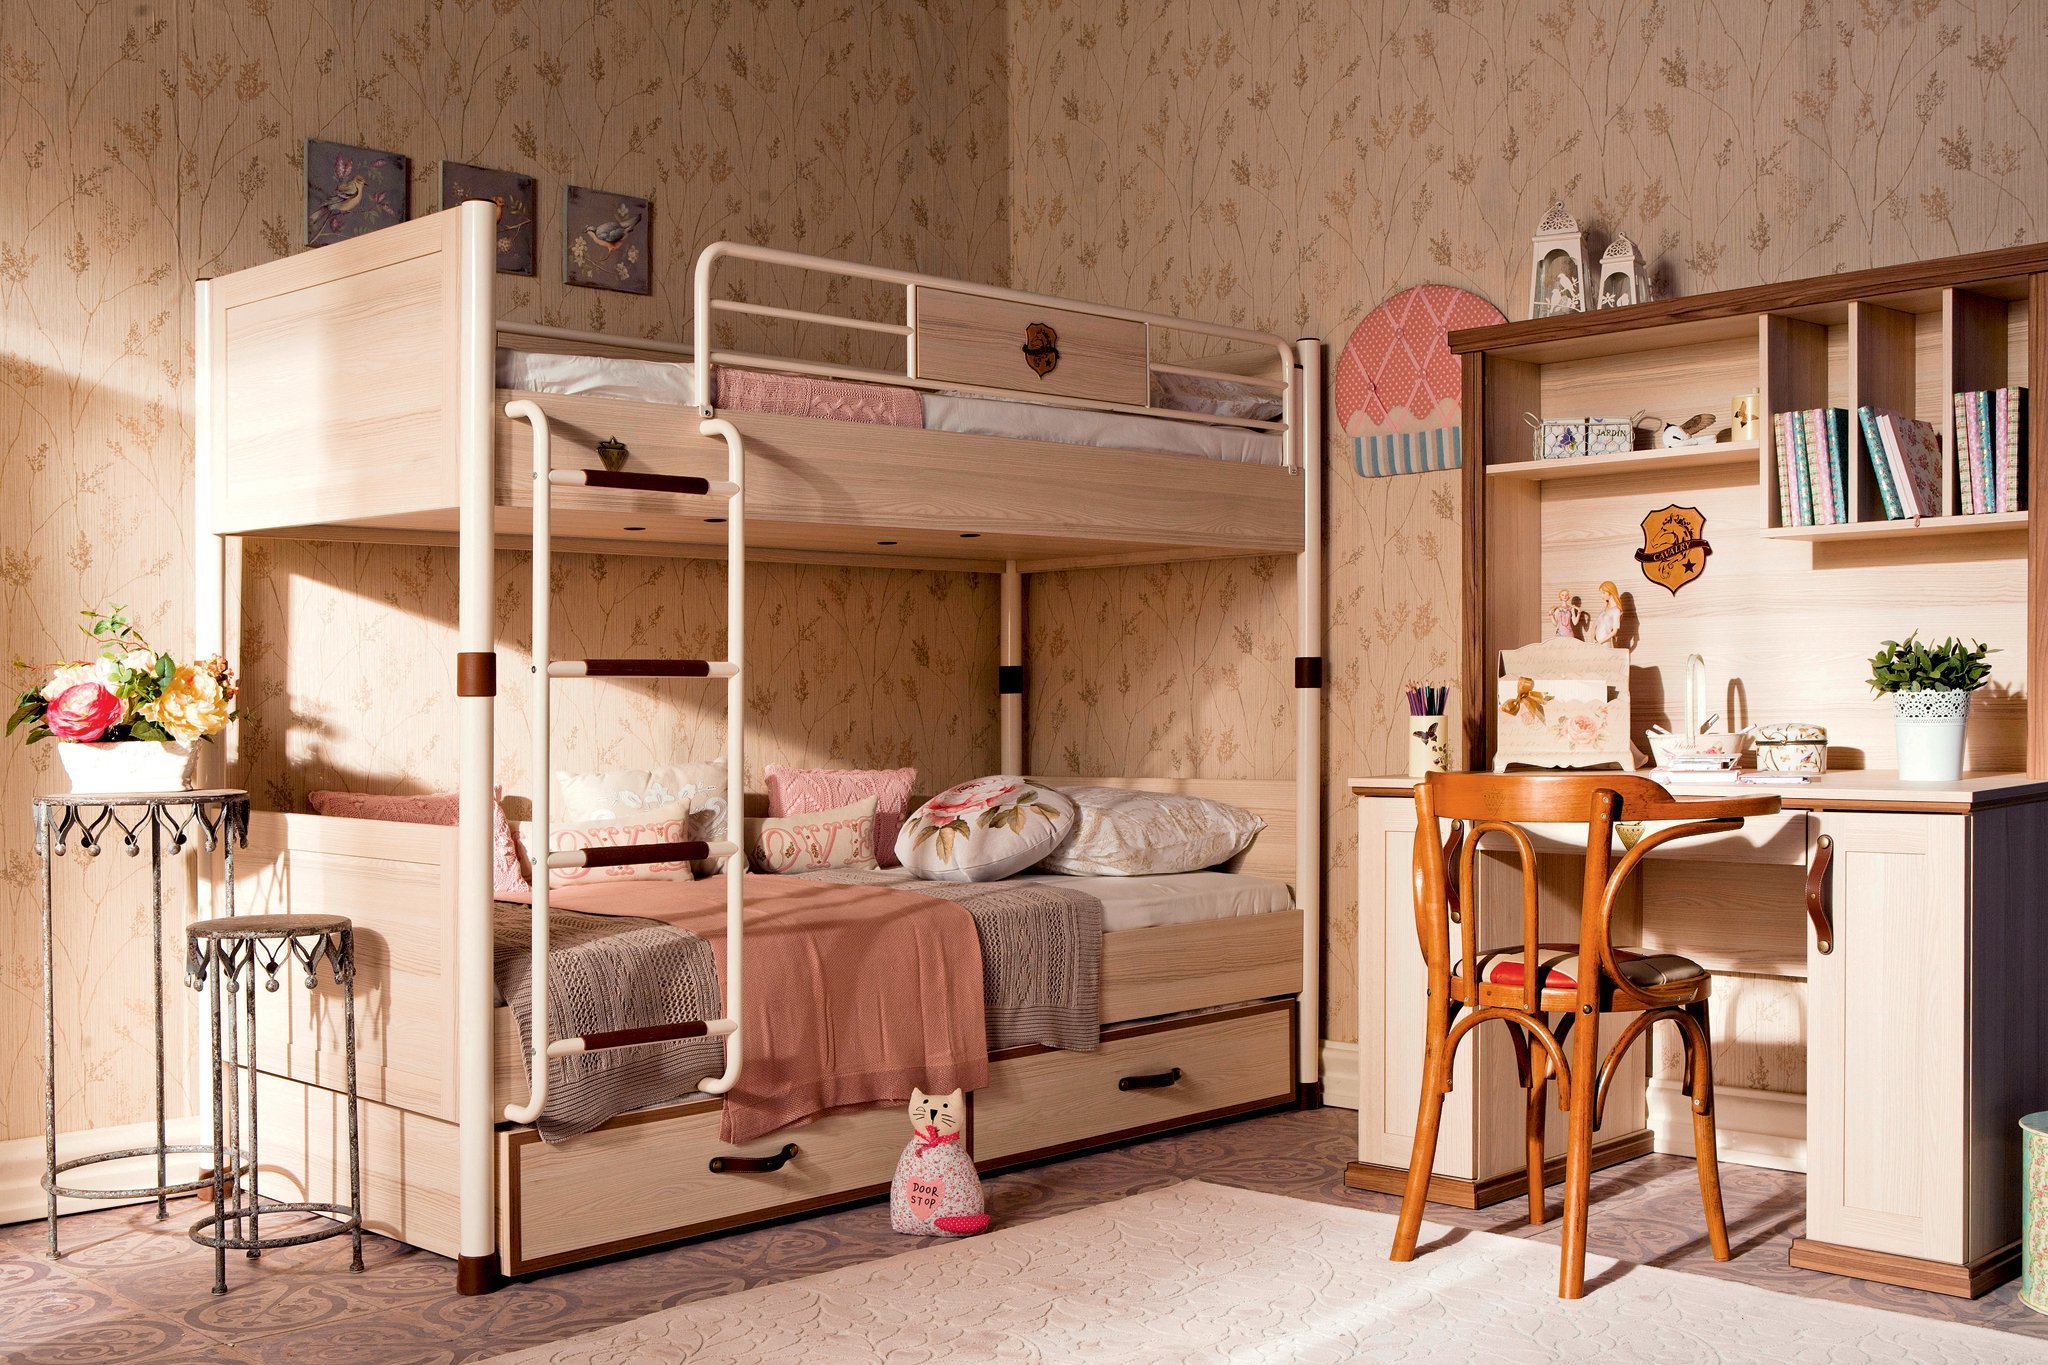 Детская кровать с двумя спальными местами